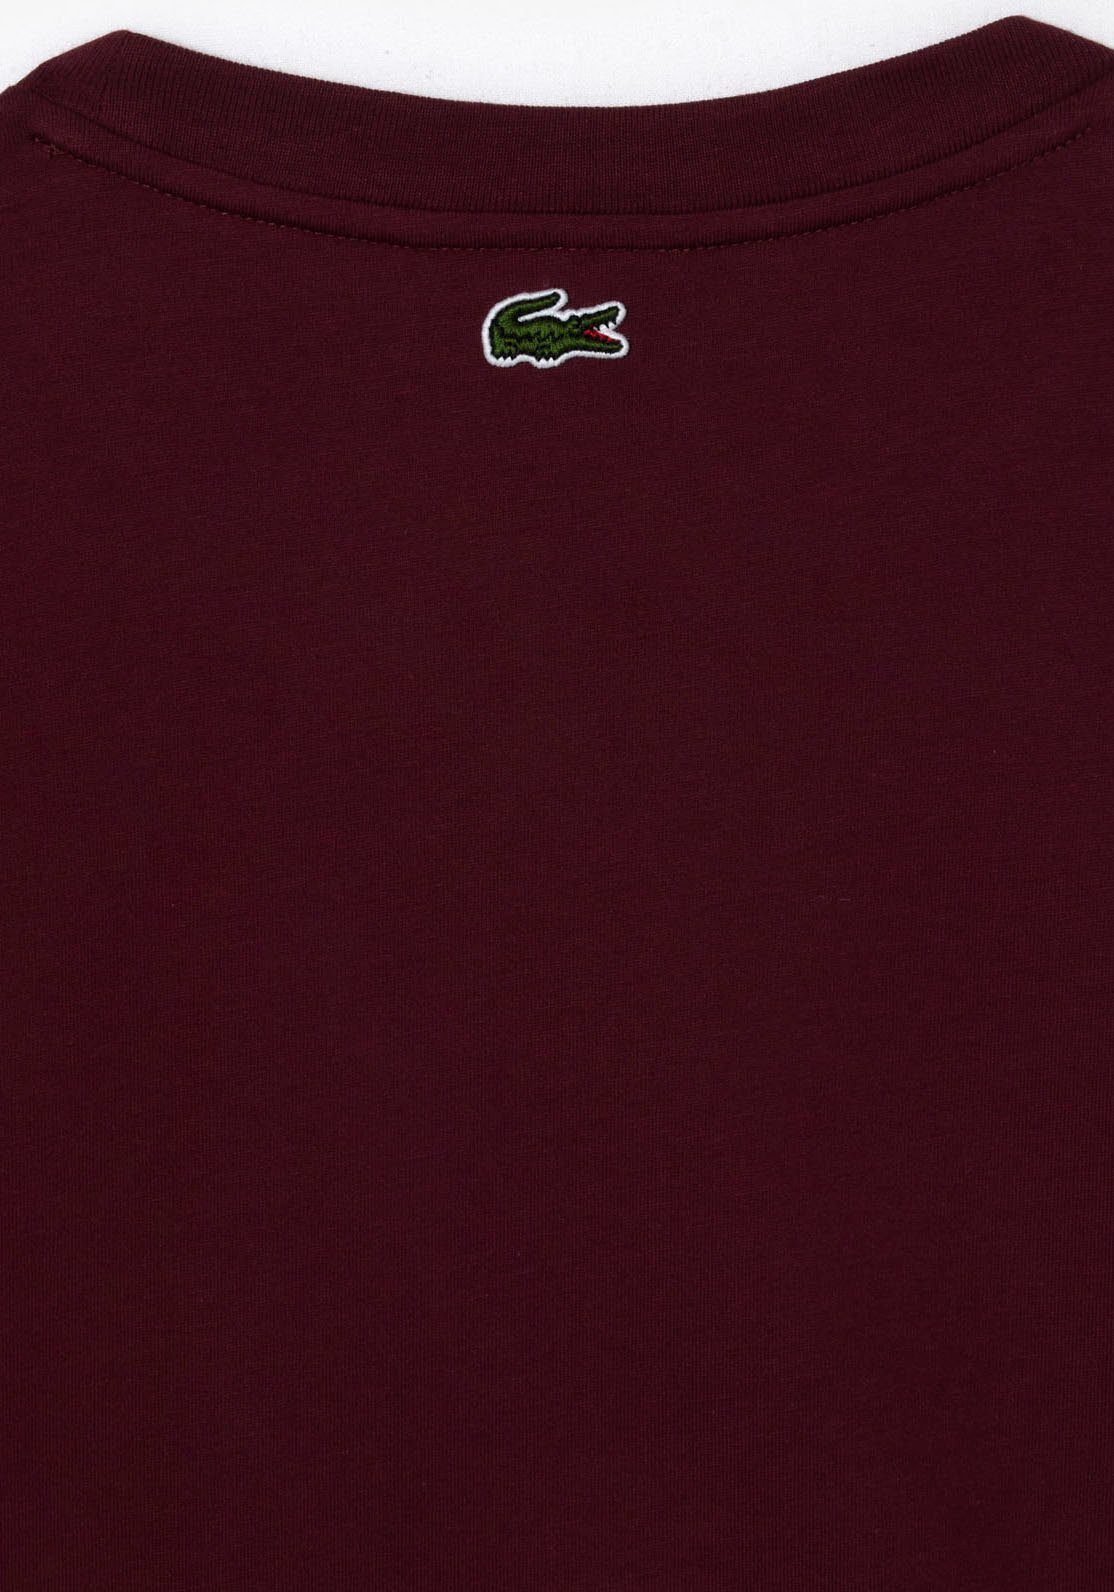 T-Shirt Bordeaux mit Lacoste Markenlabel